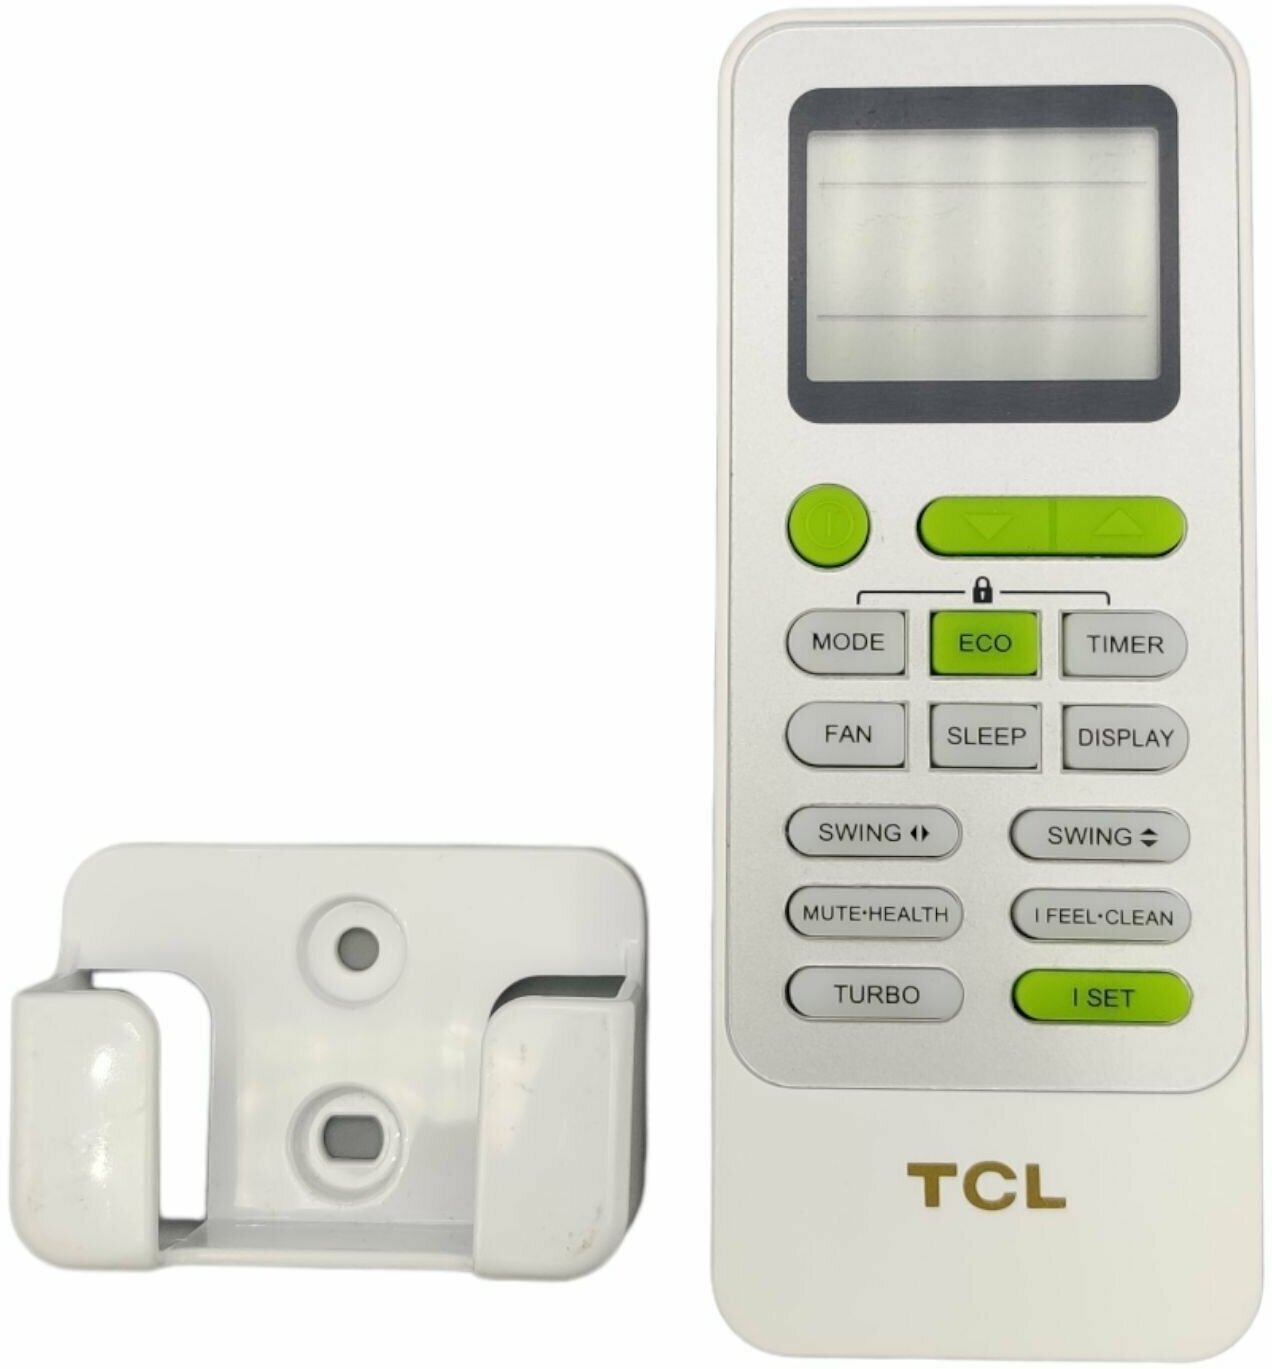 Пульт ДУ TCL HRA/EF 220328(CG) 22013-004229 для кондиционера